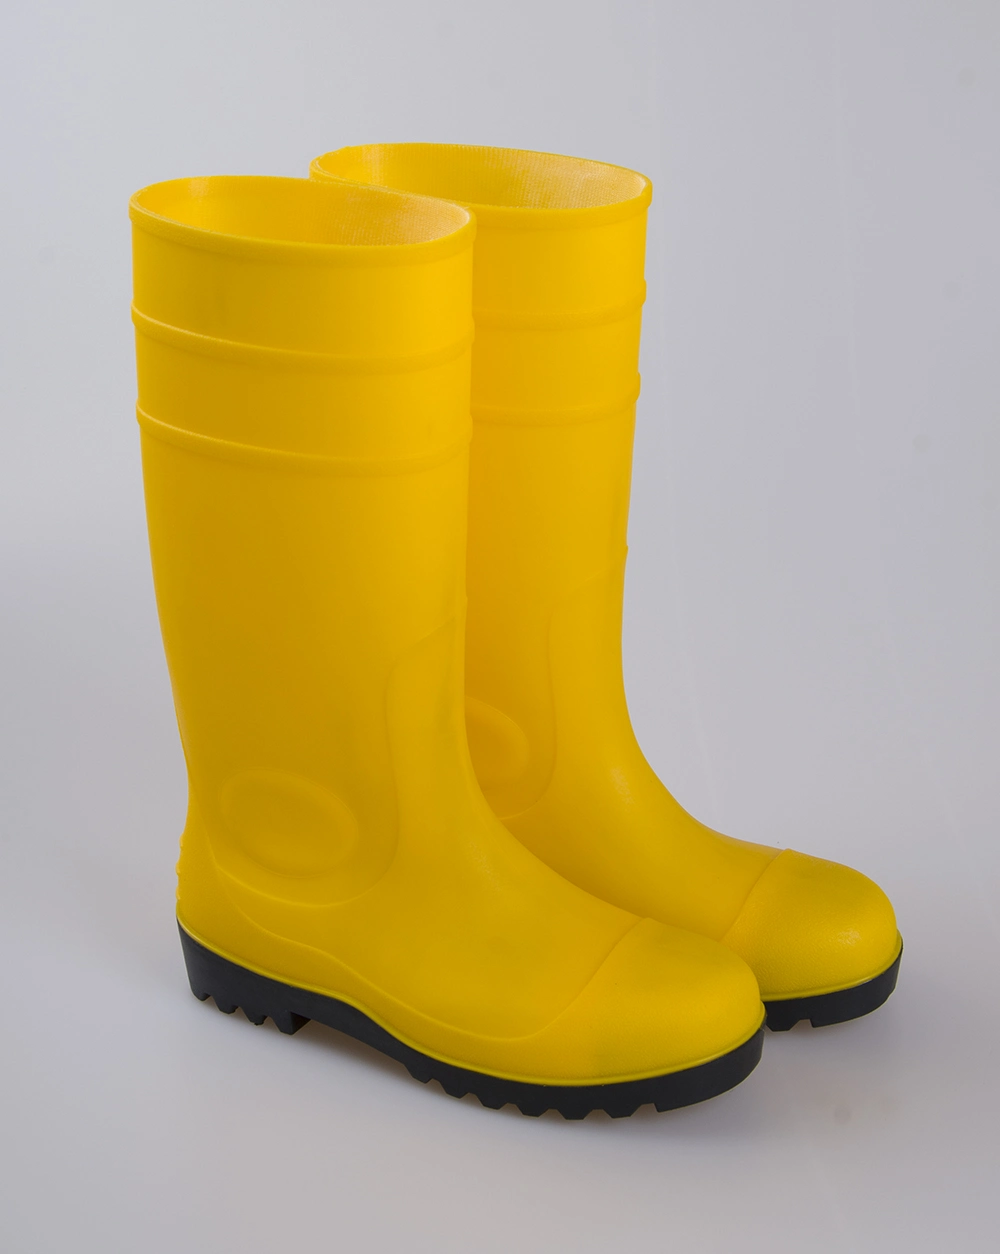 Black Neoprene Safety Rubber Rain Boots for Men